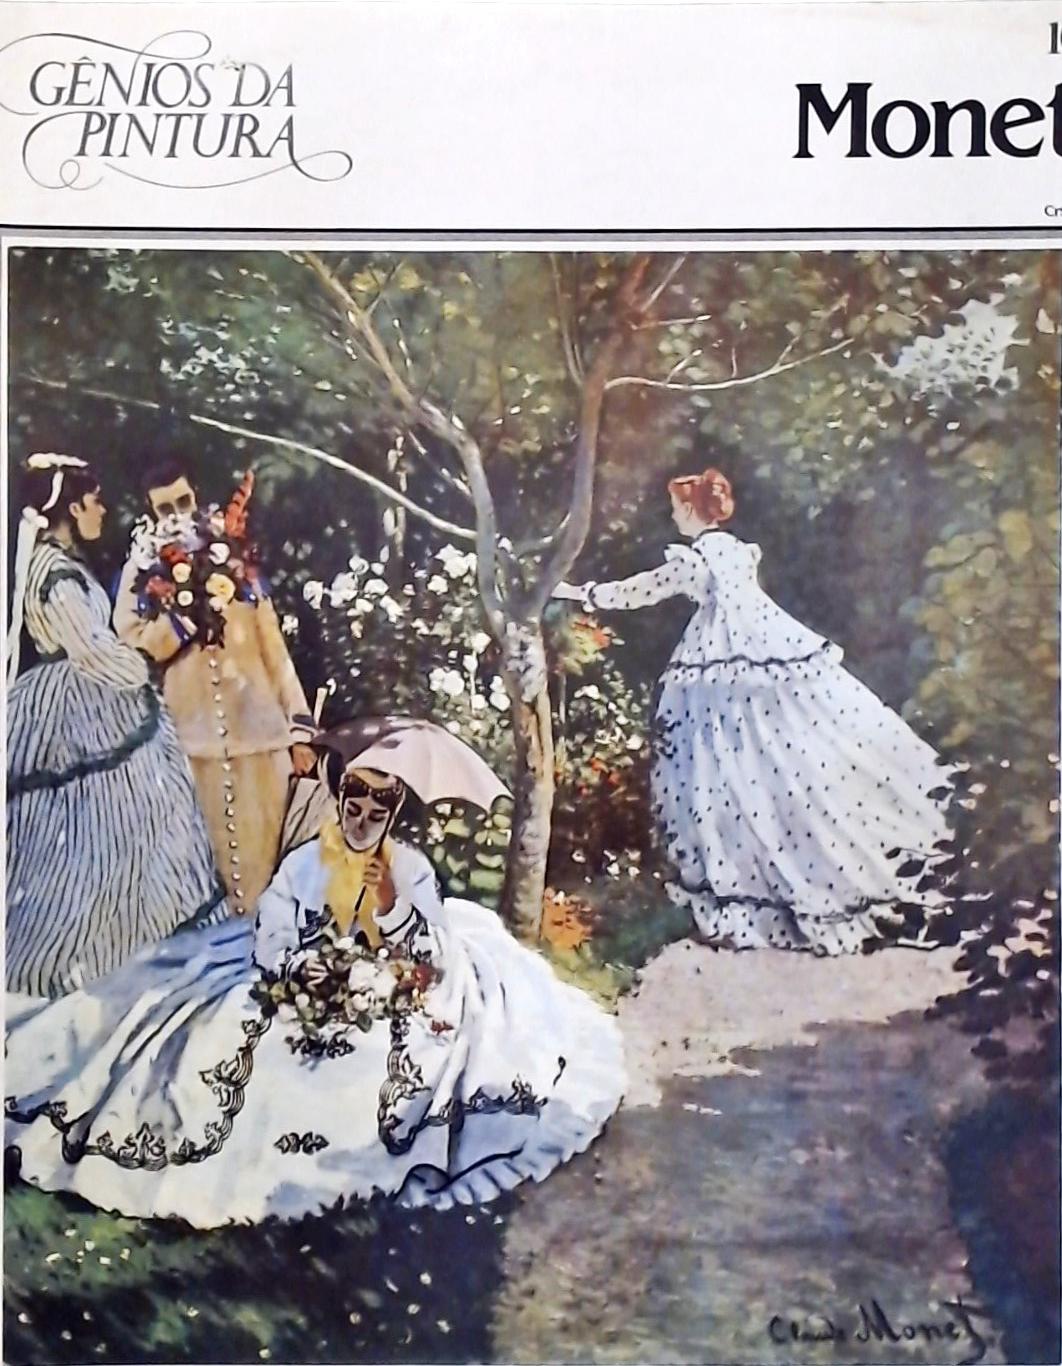 Gênios da Pintura - Monet